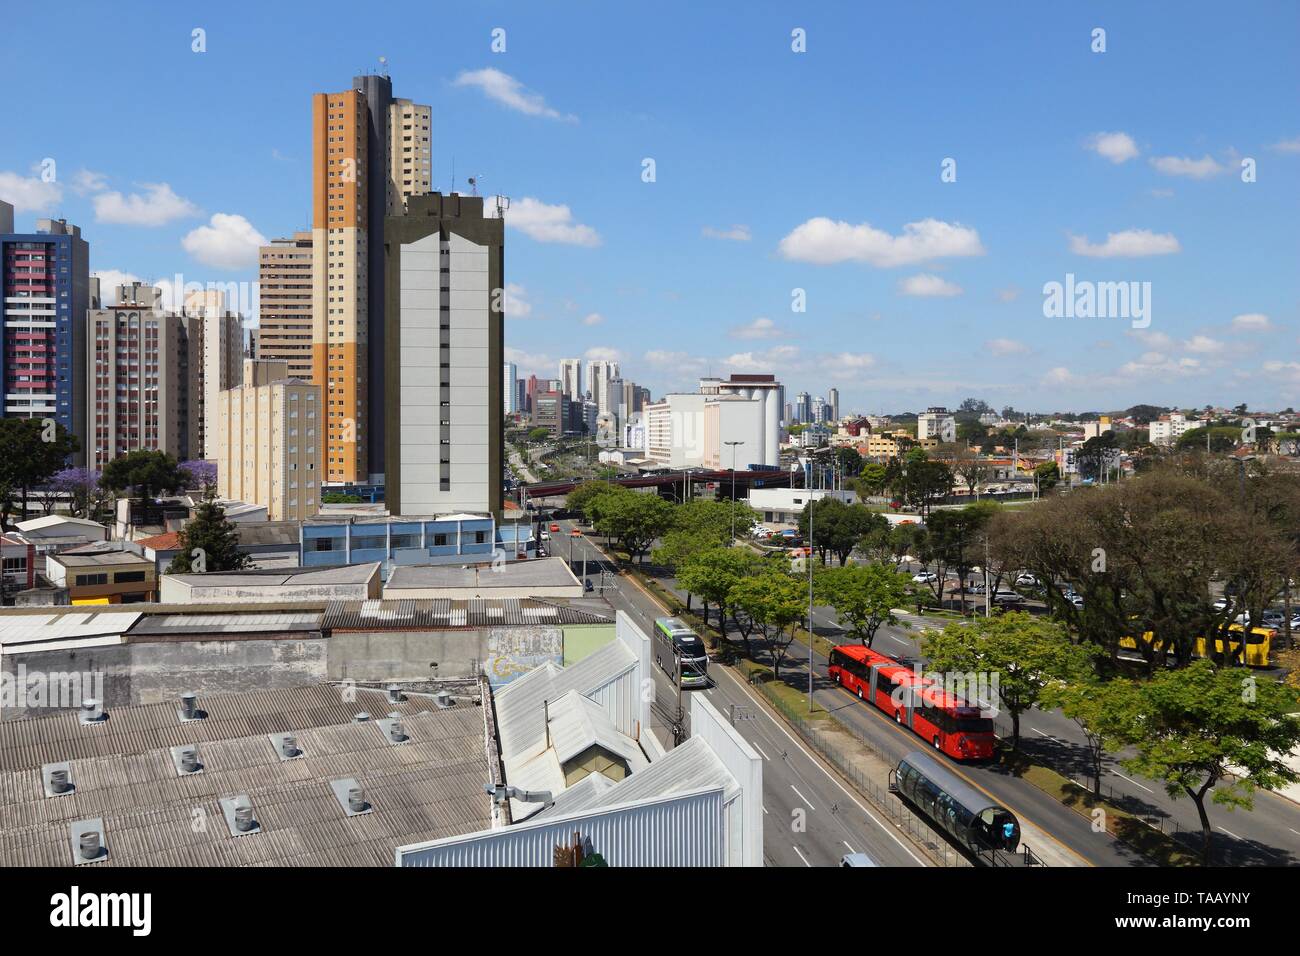 Curitiba, Brasilien - die moderne Skyline der Stadt. Hohes Apartmentgebäude. Stockfoto